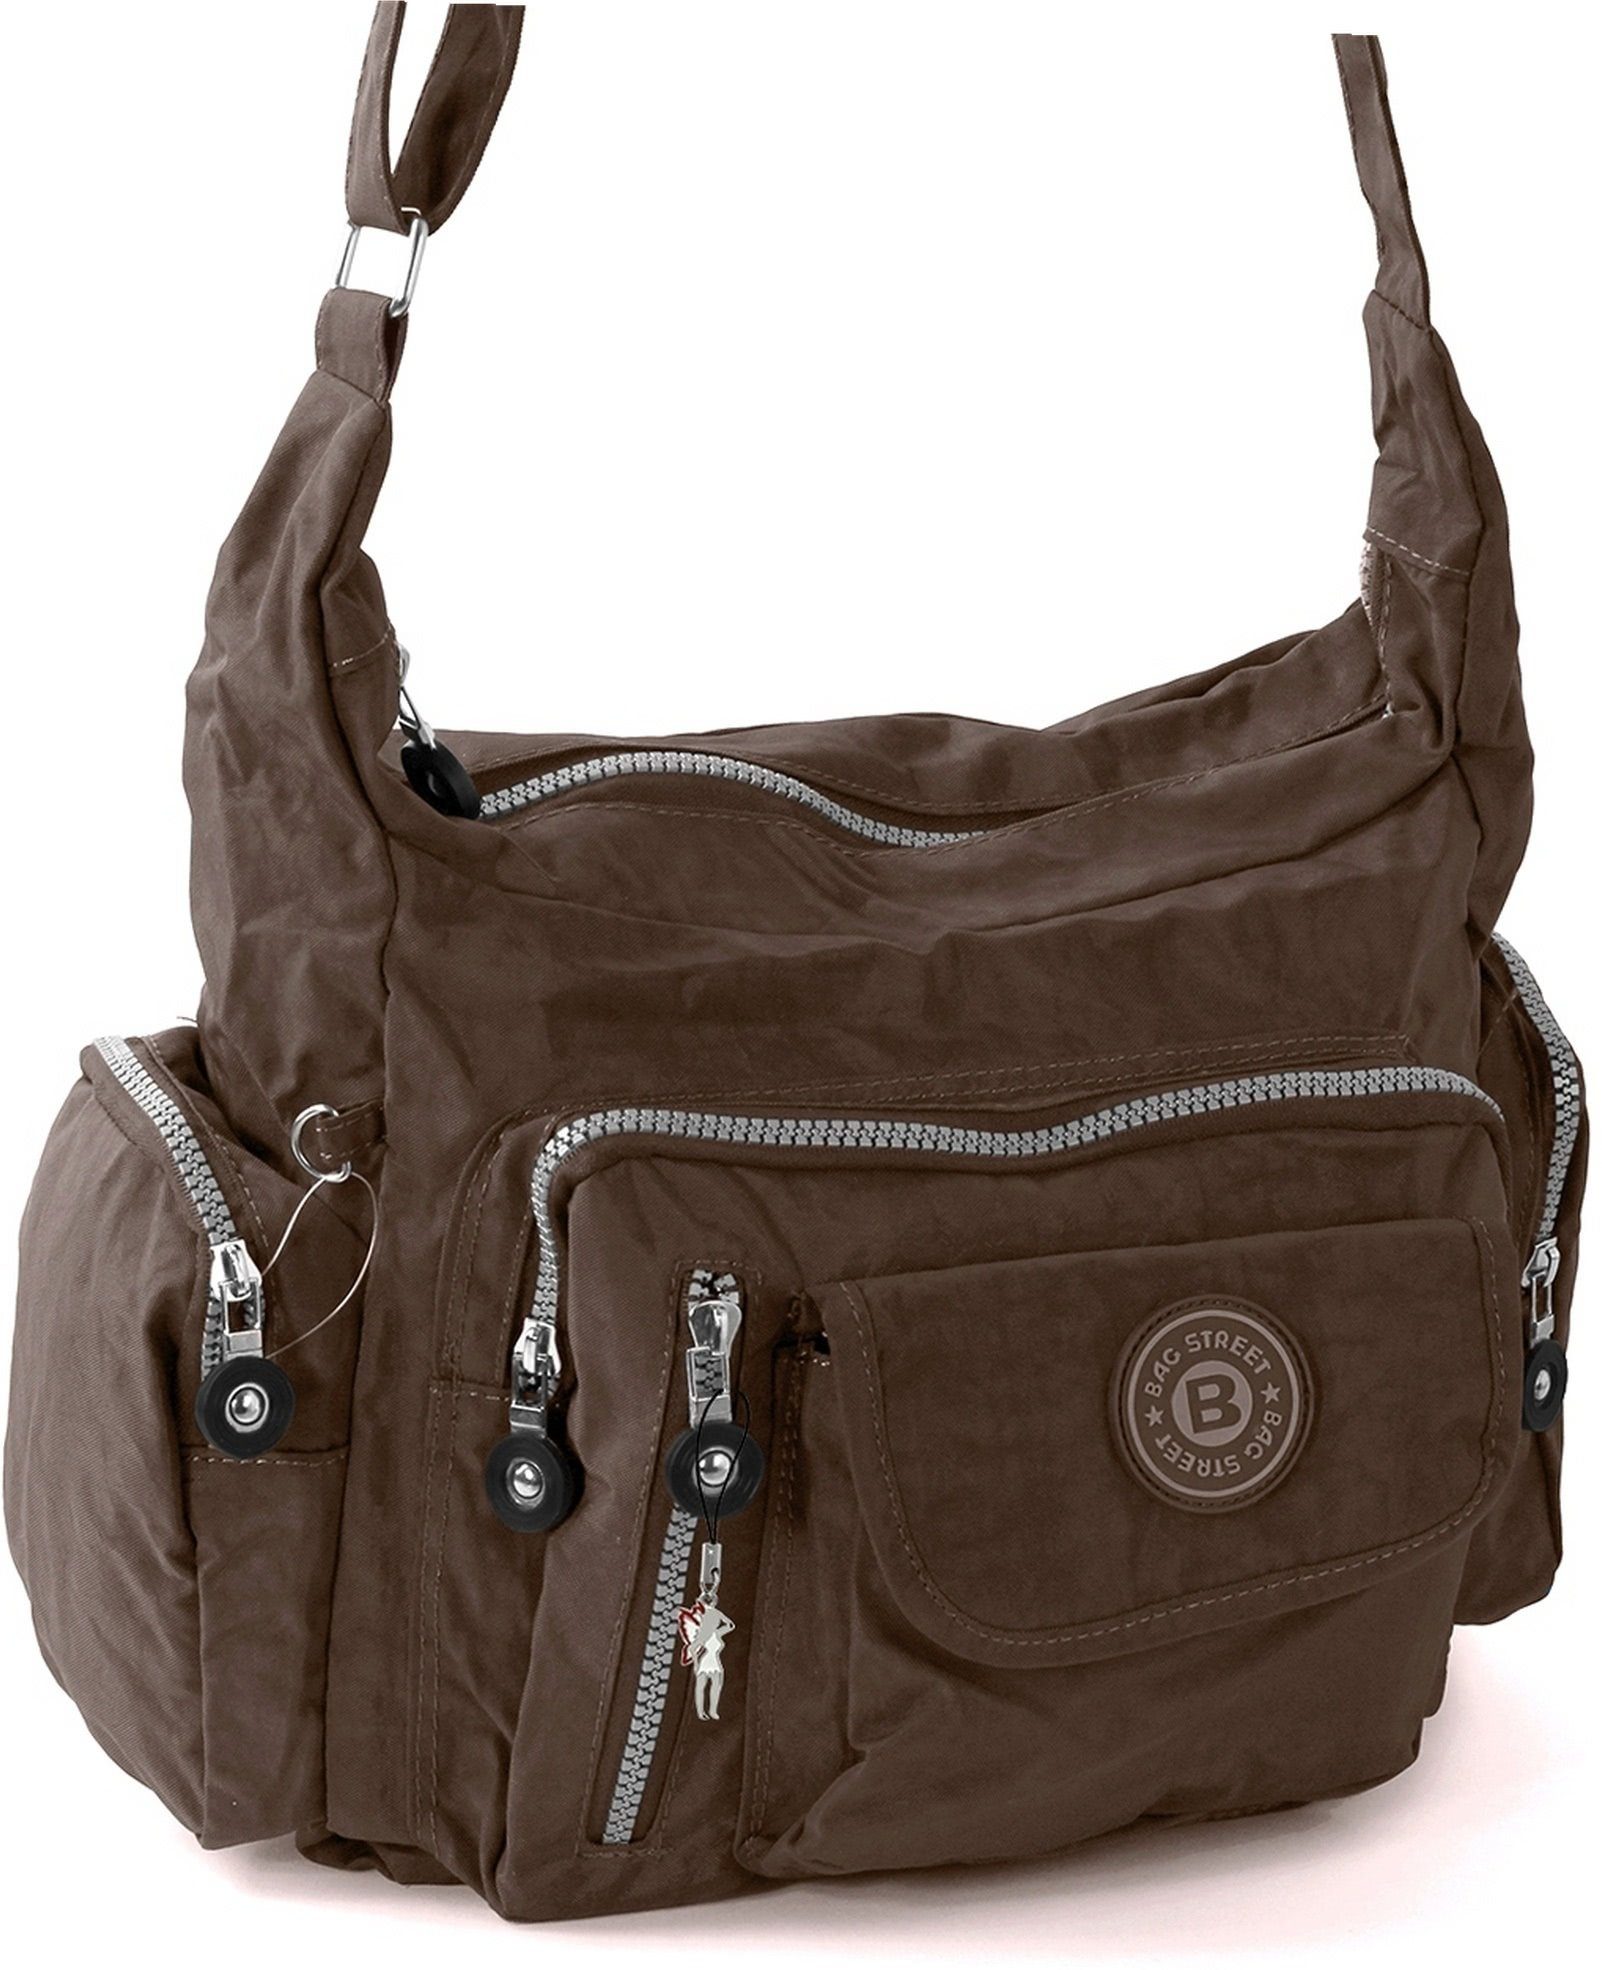 BAG STREET Schultertasche Bag Jugend Nylon Schultertasche), (Schultertasche, Damen, Damenhandtasche Tasche Street braun strapazierfähiges Textilnylon Tasche